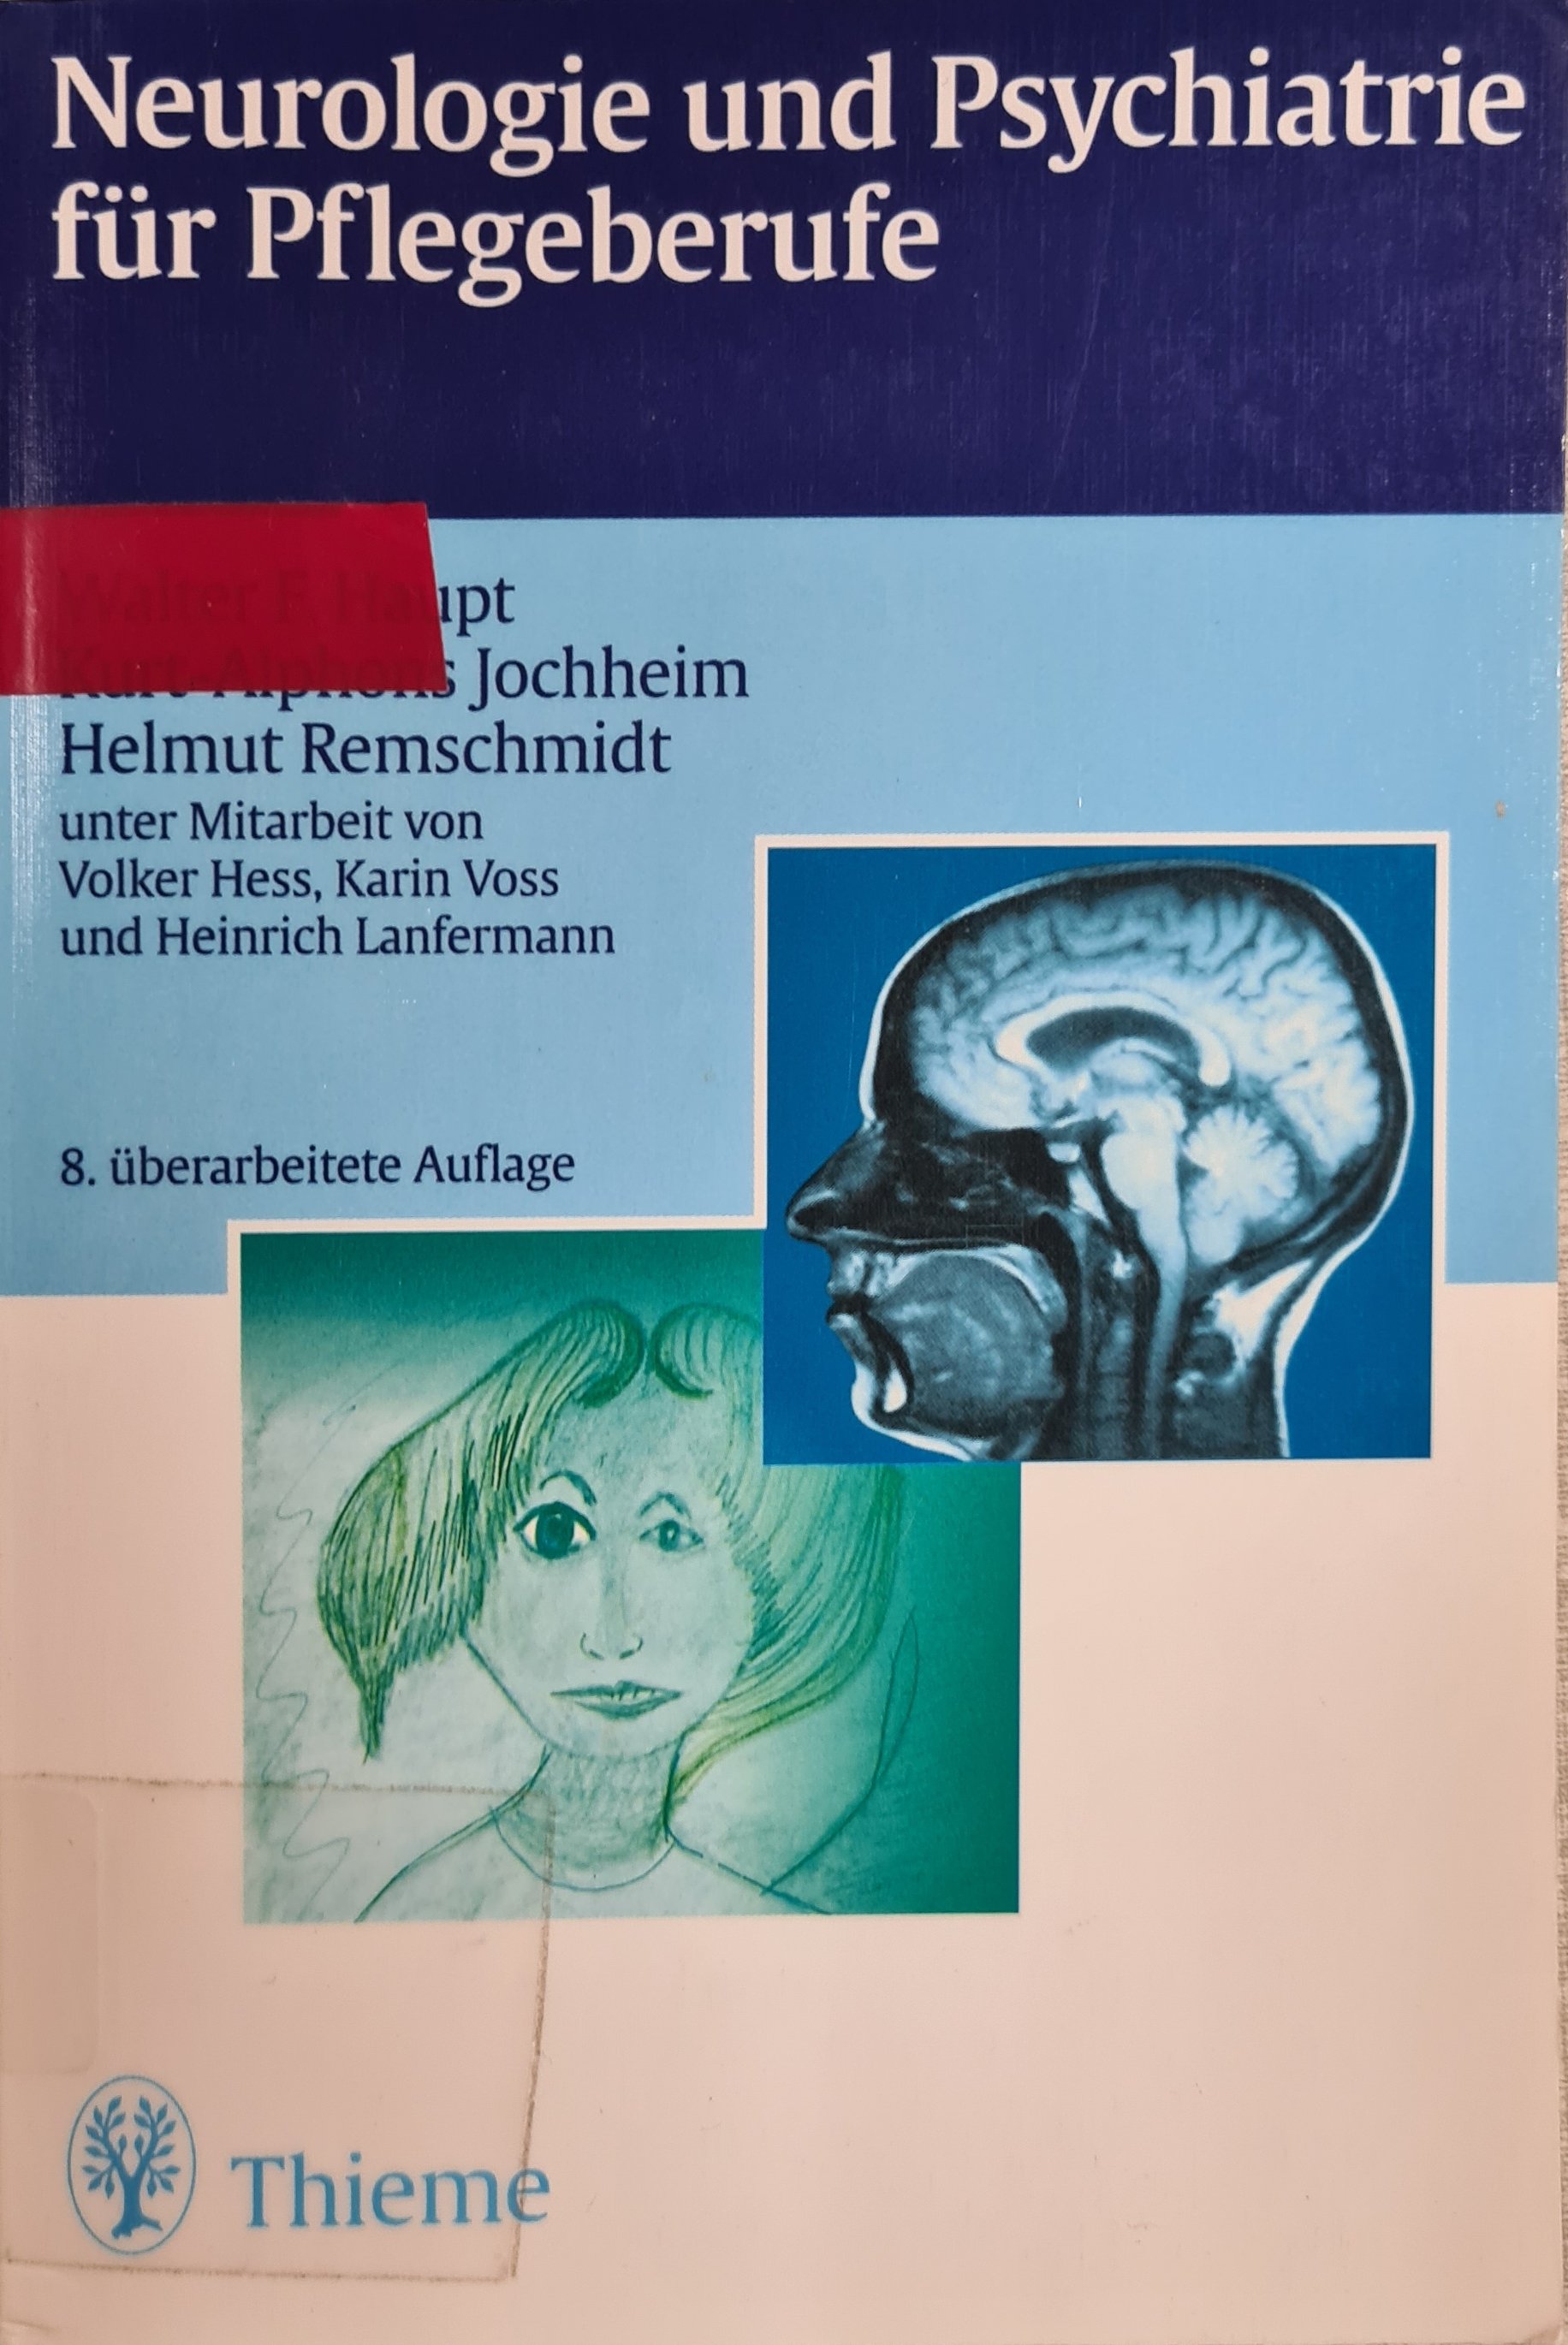 Neurologie und Psychiatrie für Pflegeberufe (Krankenhausmuseum Bielefeld e.V. CC BY-NC-SA)